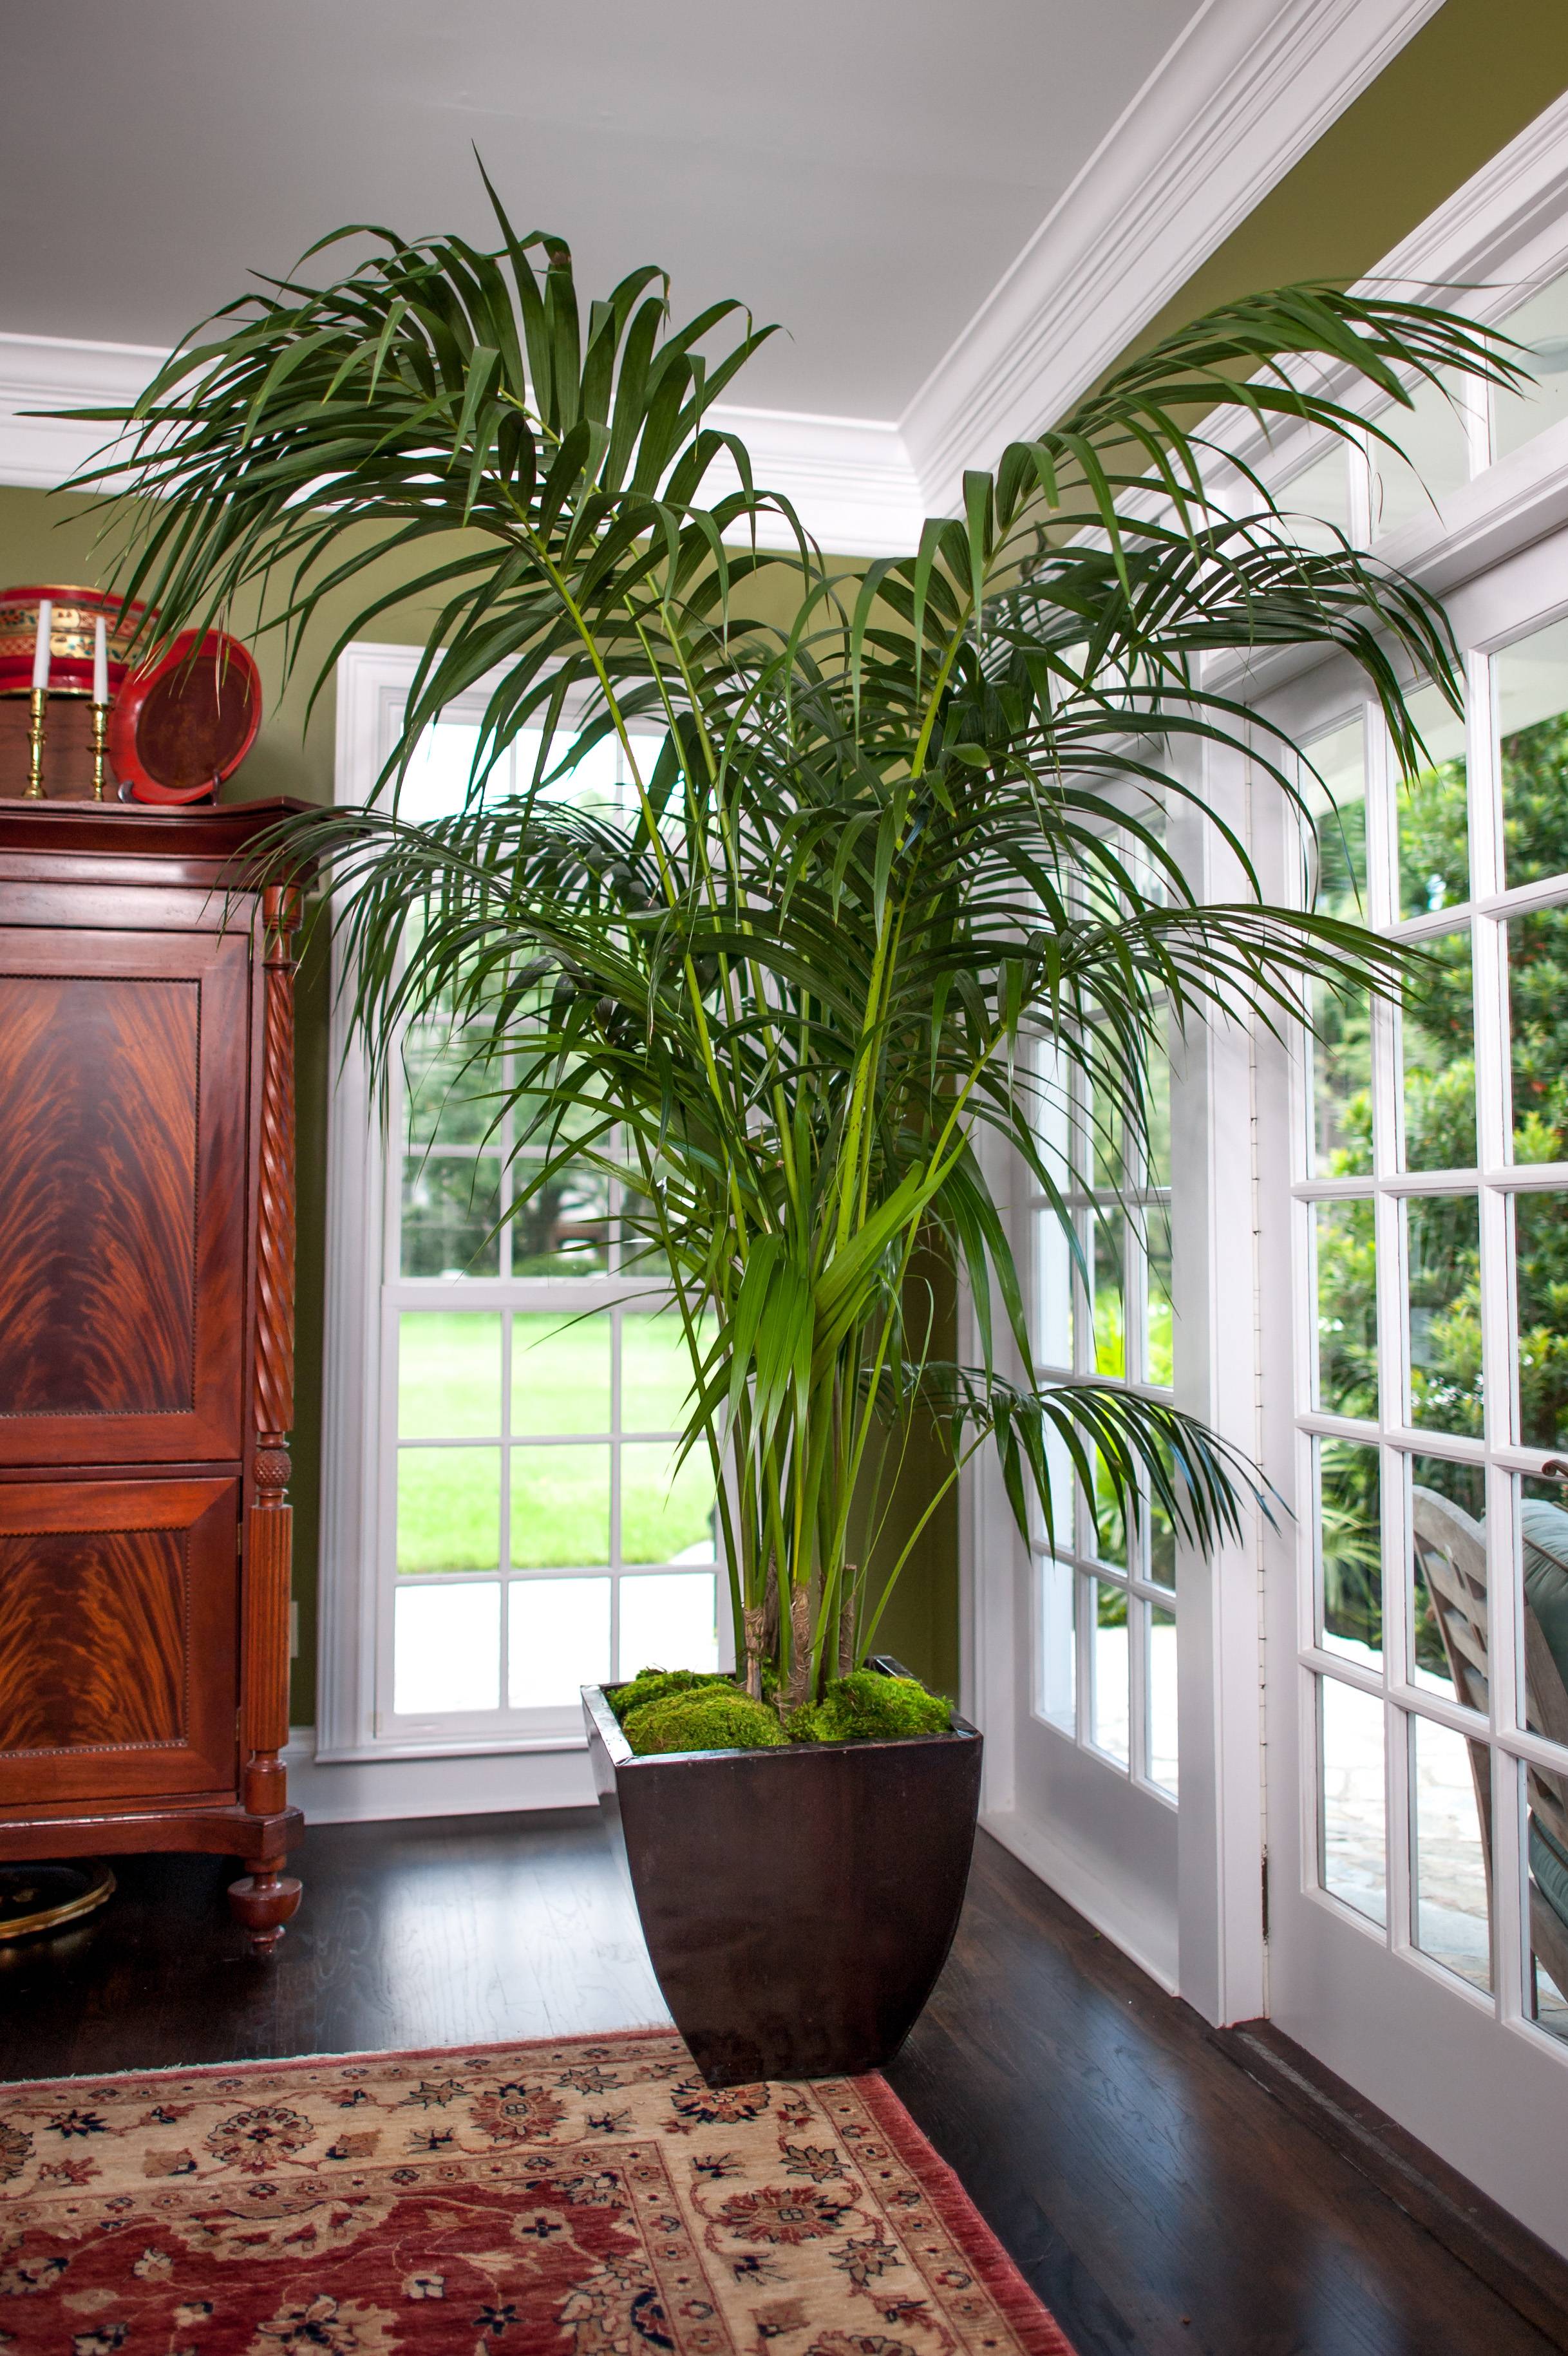 kentia tanaman palmera planta tropis howea plantz potted ruangan cantik beringin forsteriana decorativa beesandroses